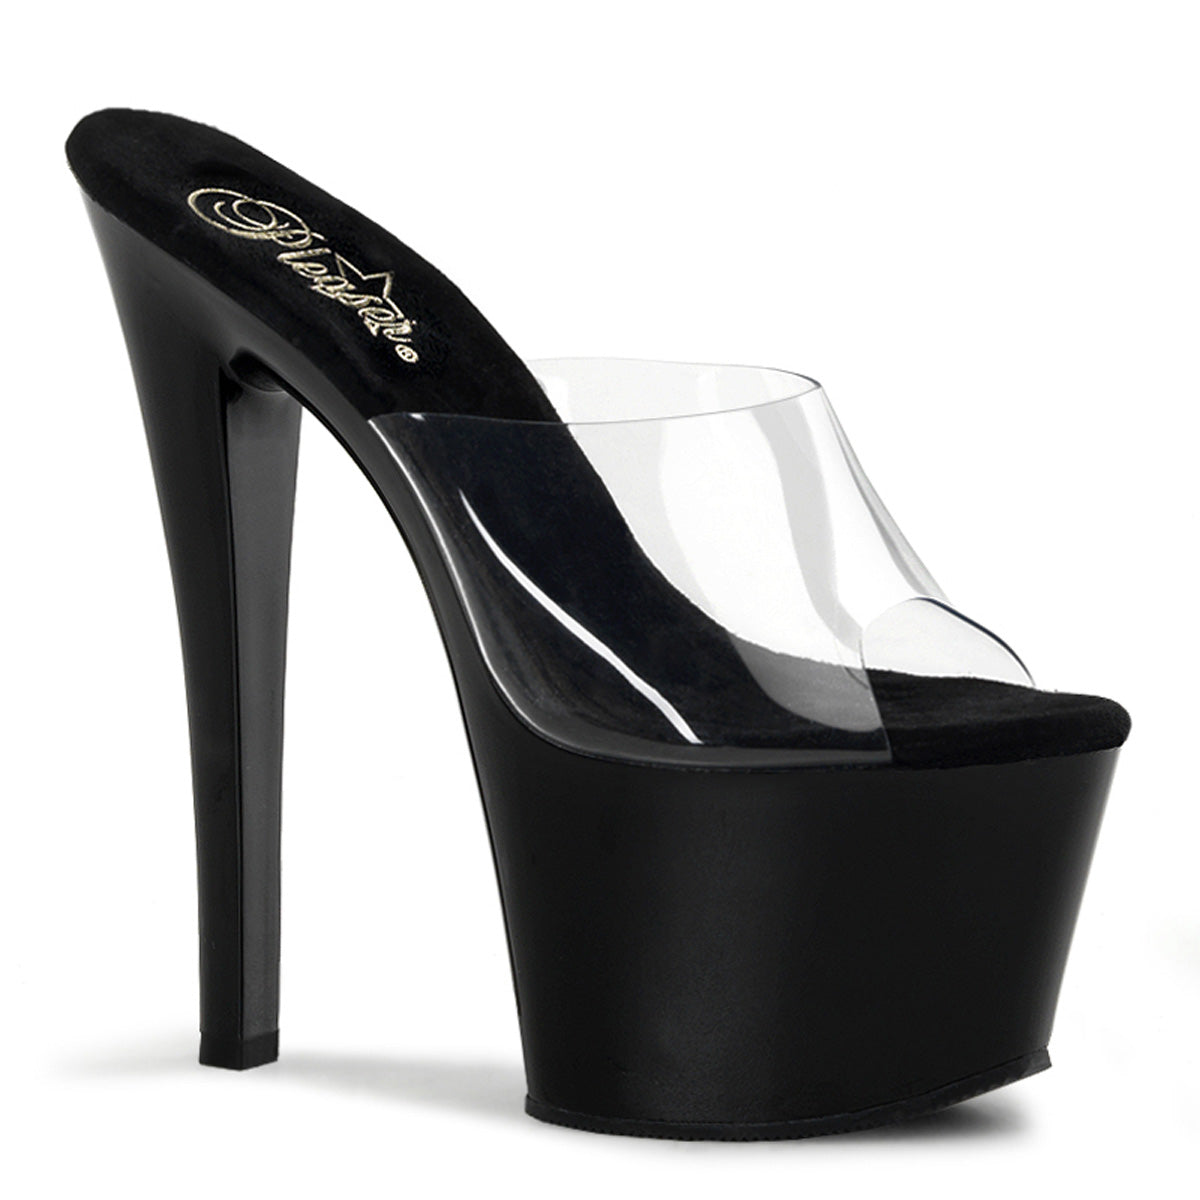 Pleaser Womens Sandals SKY-301 Clr/Blk